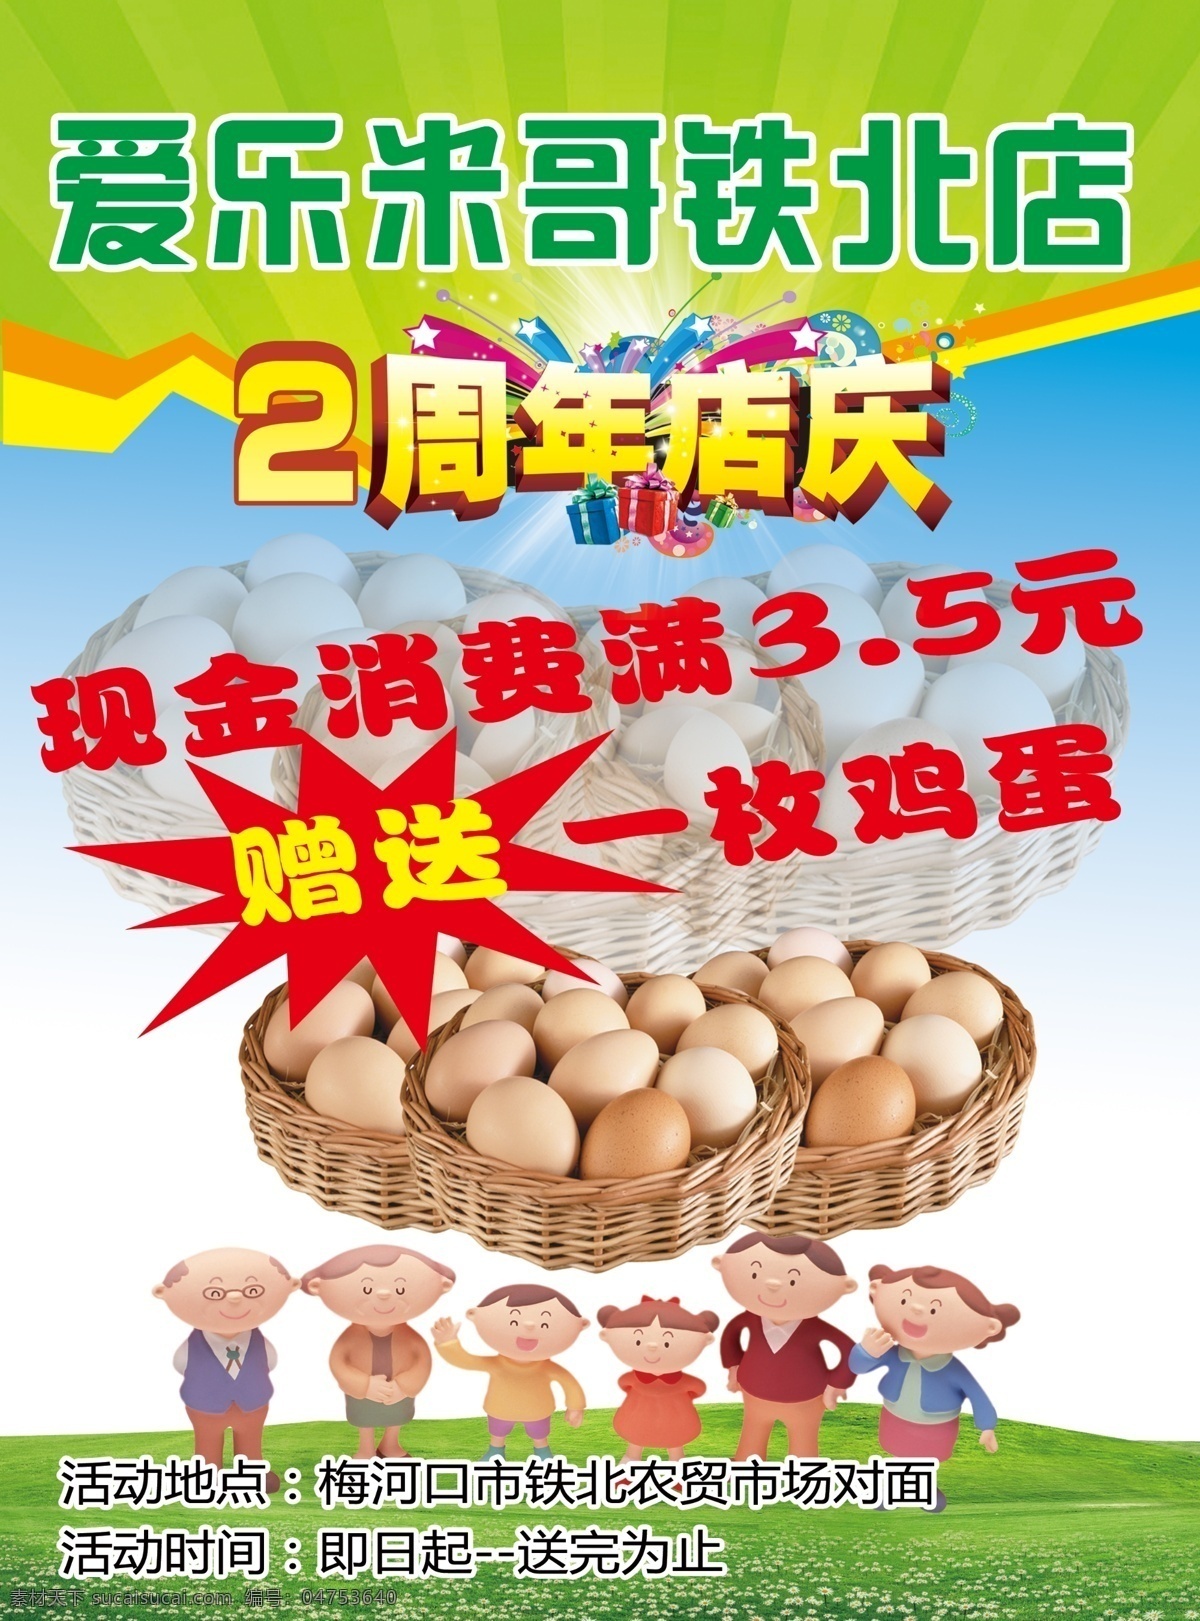 爱乐米哥 2周年店庆 送鸡蛋 绿色